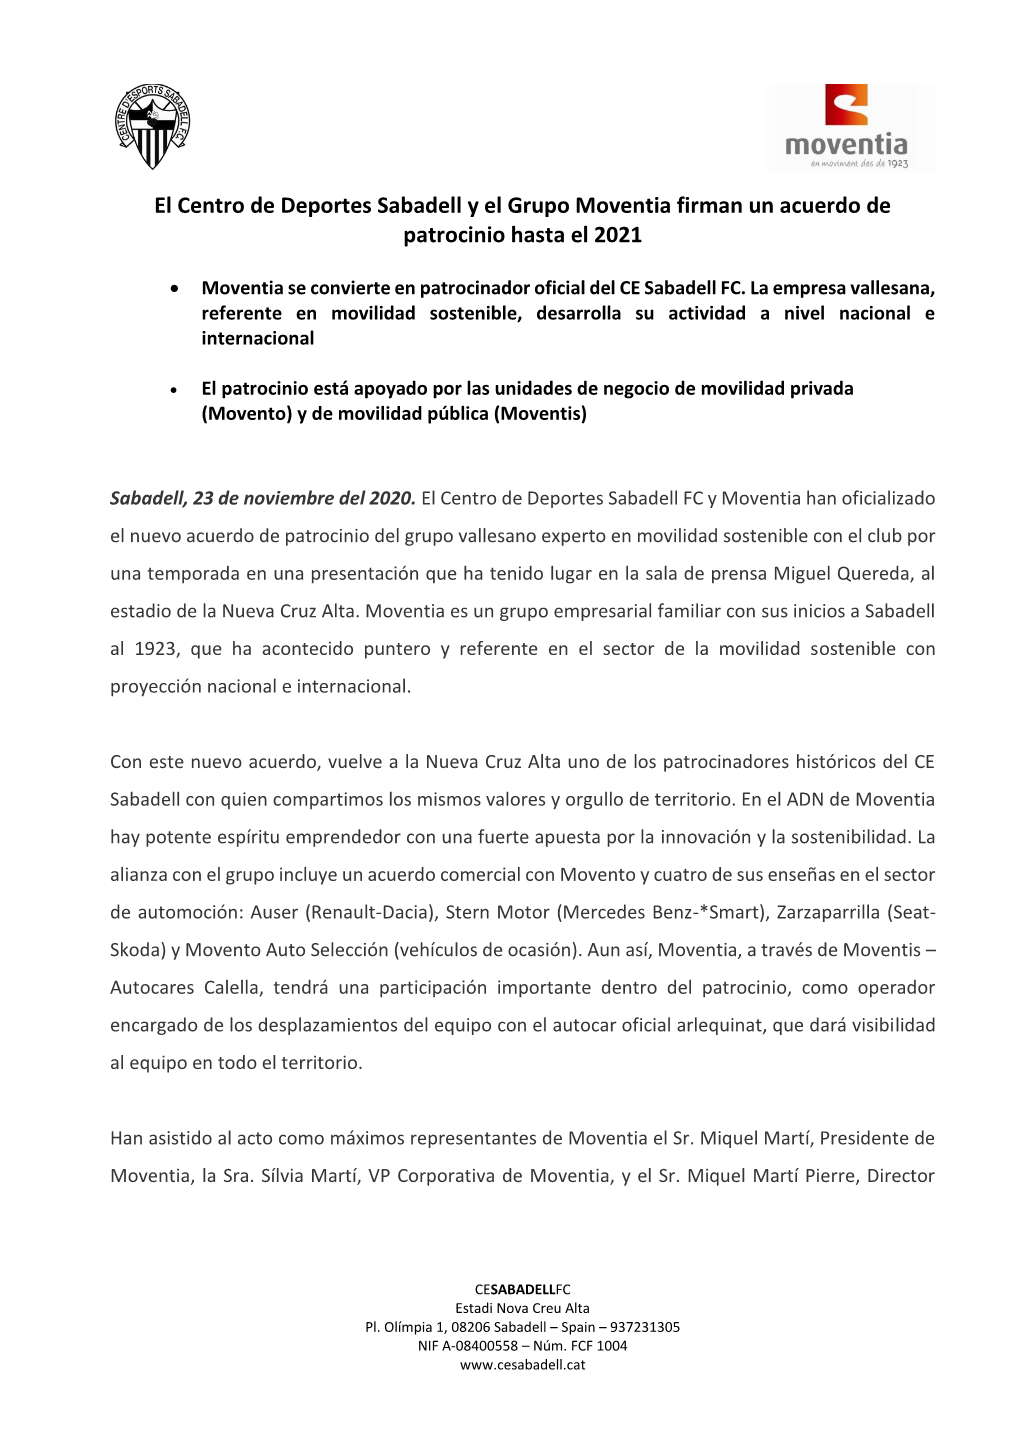 El Centro De Deportes Sabadell Y El Grupo Moventia Firman Un Acuerdo De Patrocinio Hasta El 2021